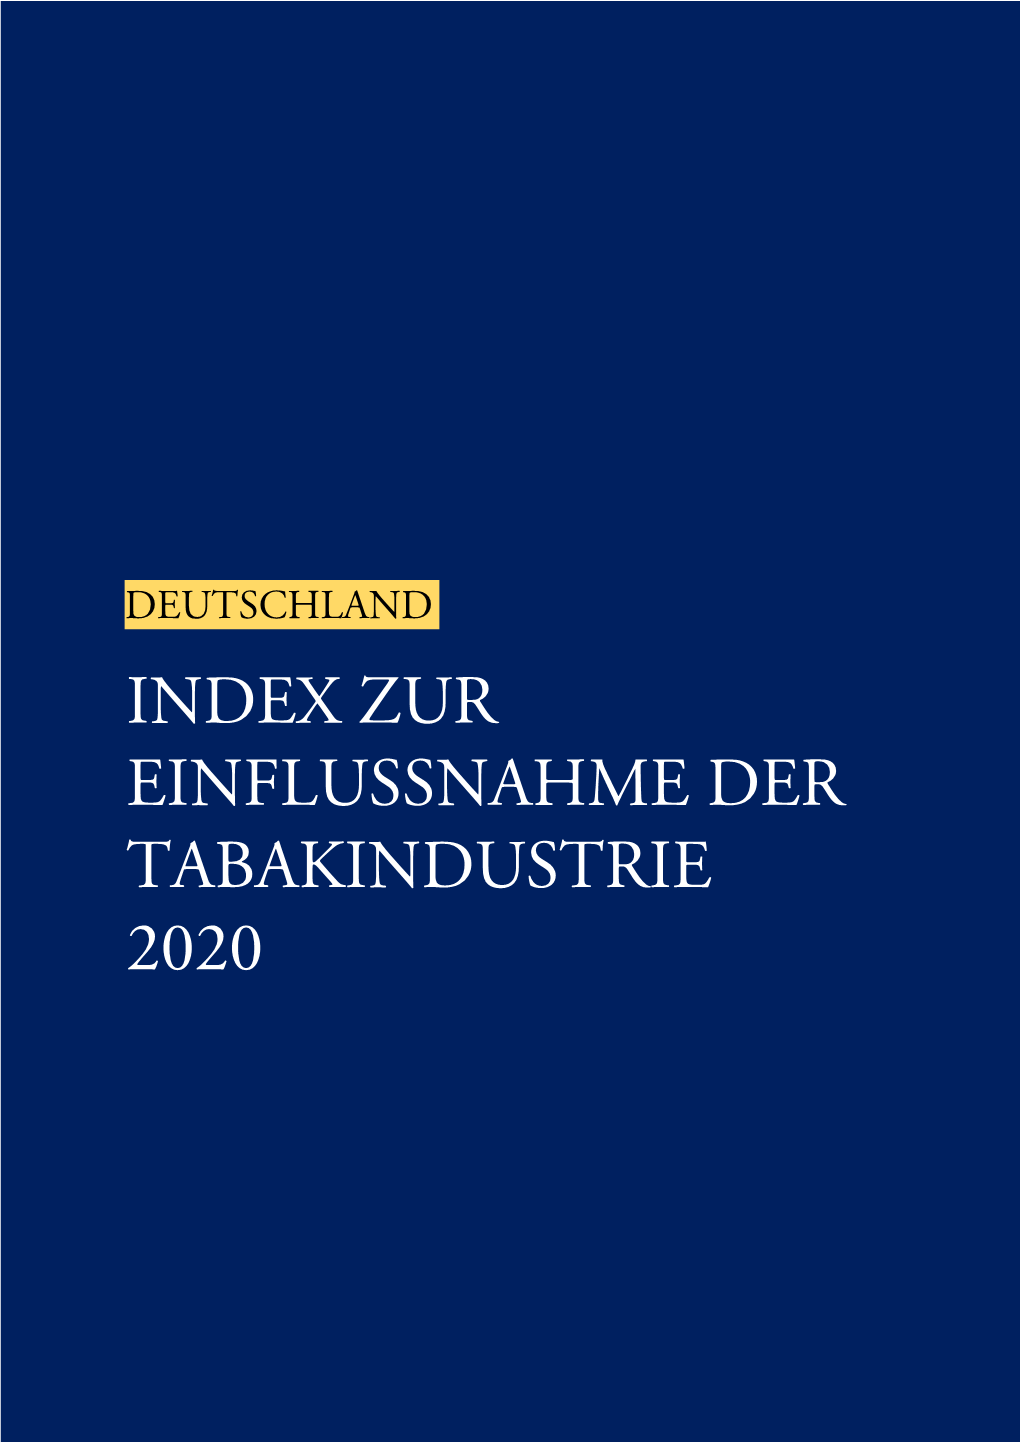 INDEX ZUR EINFLUSSNAHME DER TABAKINDUSTRIE 2020 September 2020